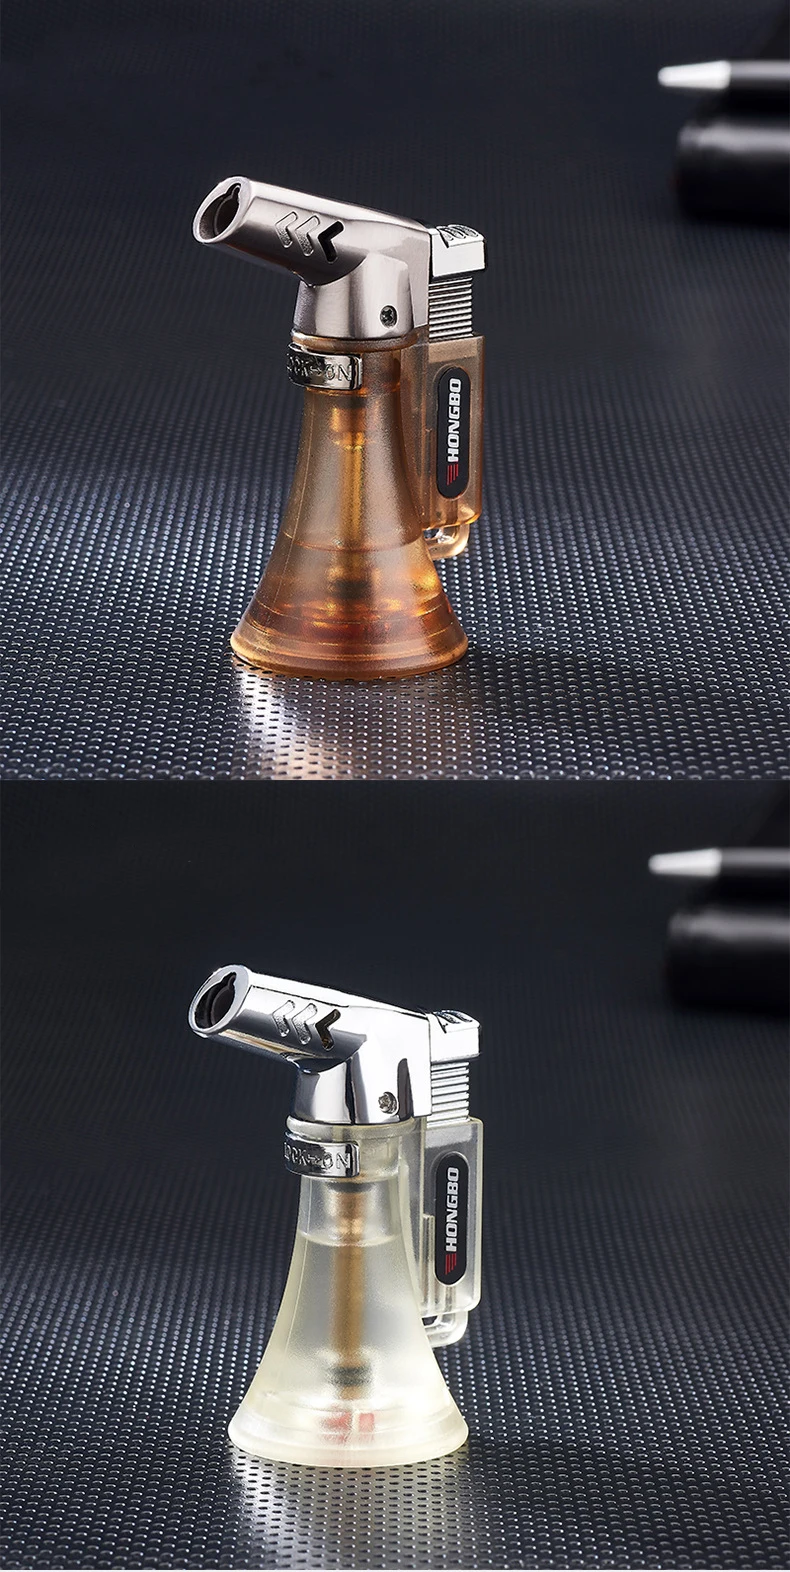 Трубная жидкость для зажигалки, пистолет, компактная Бутановая струйная Зажигалка для сигар, турбо Зажигалка 1300 C, ветрозащитная металлическая струйная Зажигалка без газа